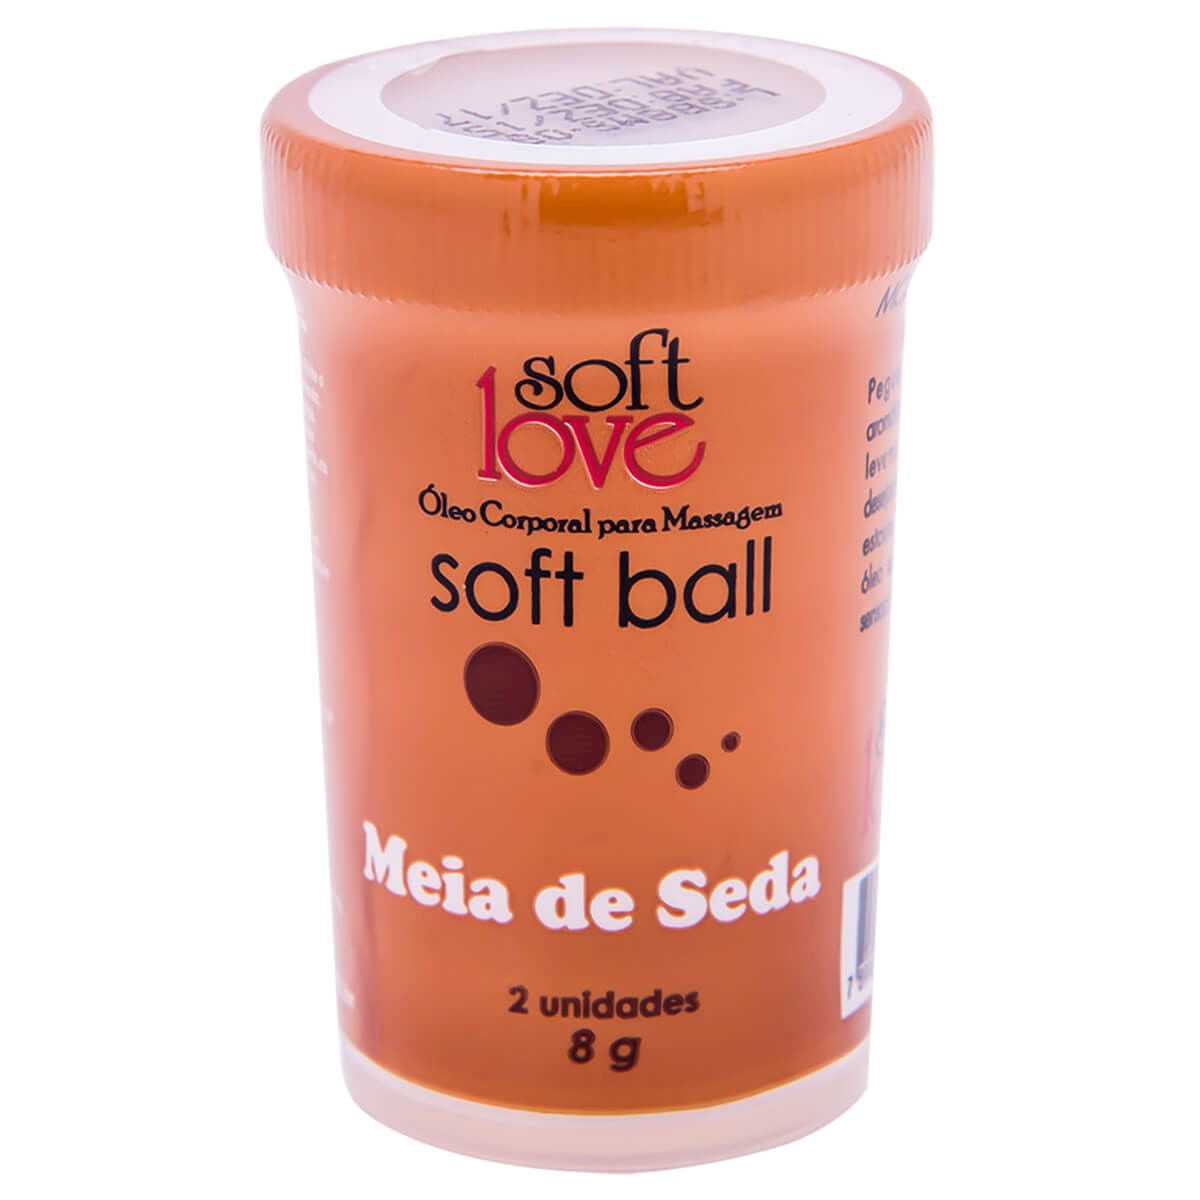 Meia de Seda Soft Ball Bolinha Funcional 2un Soft Love